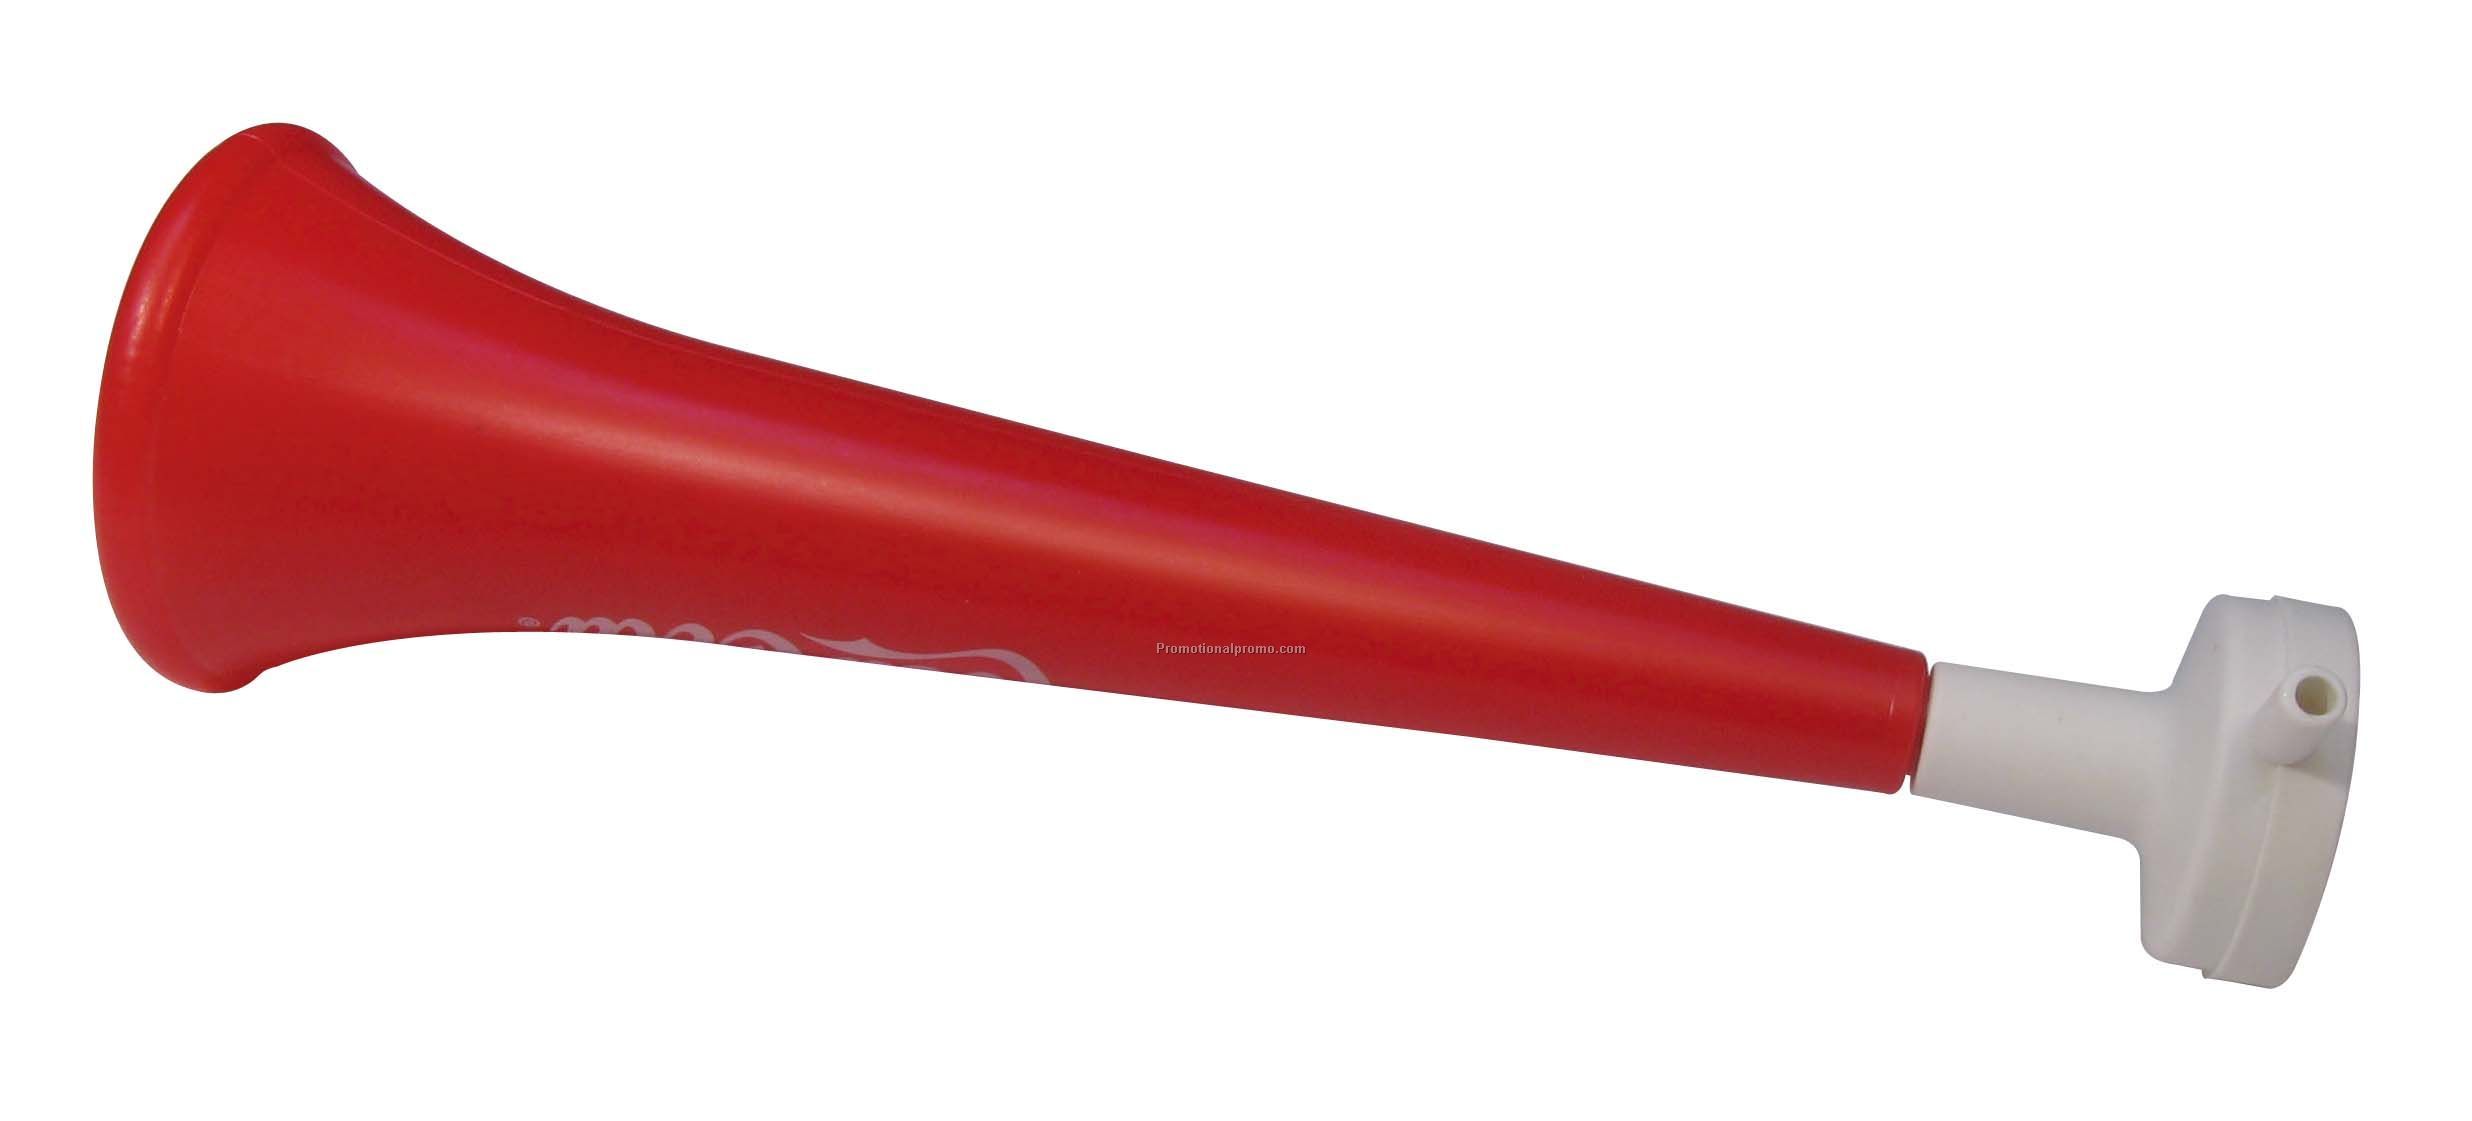 Small Vuvuzela